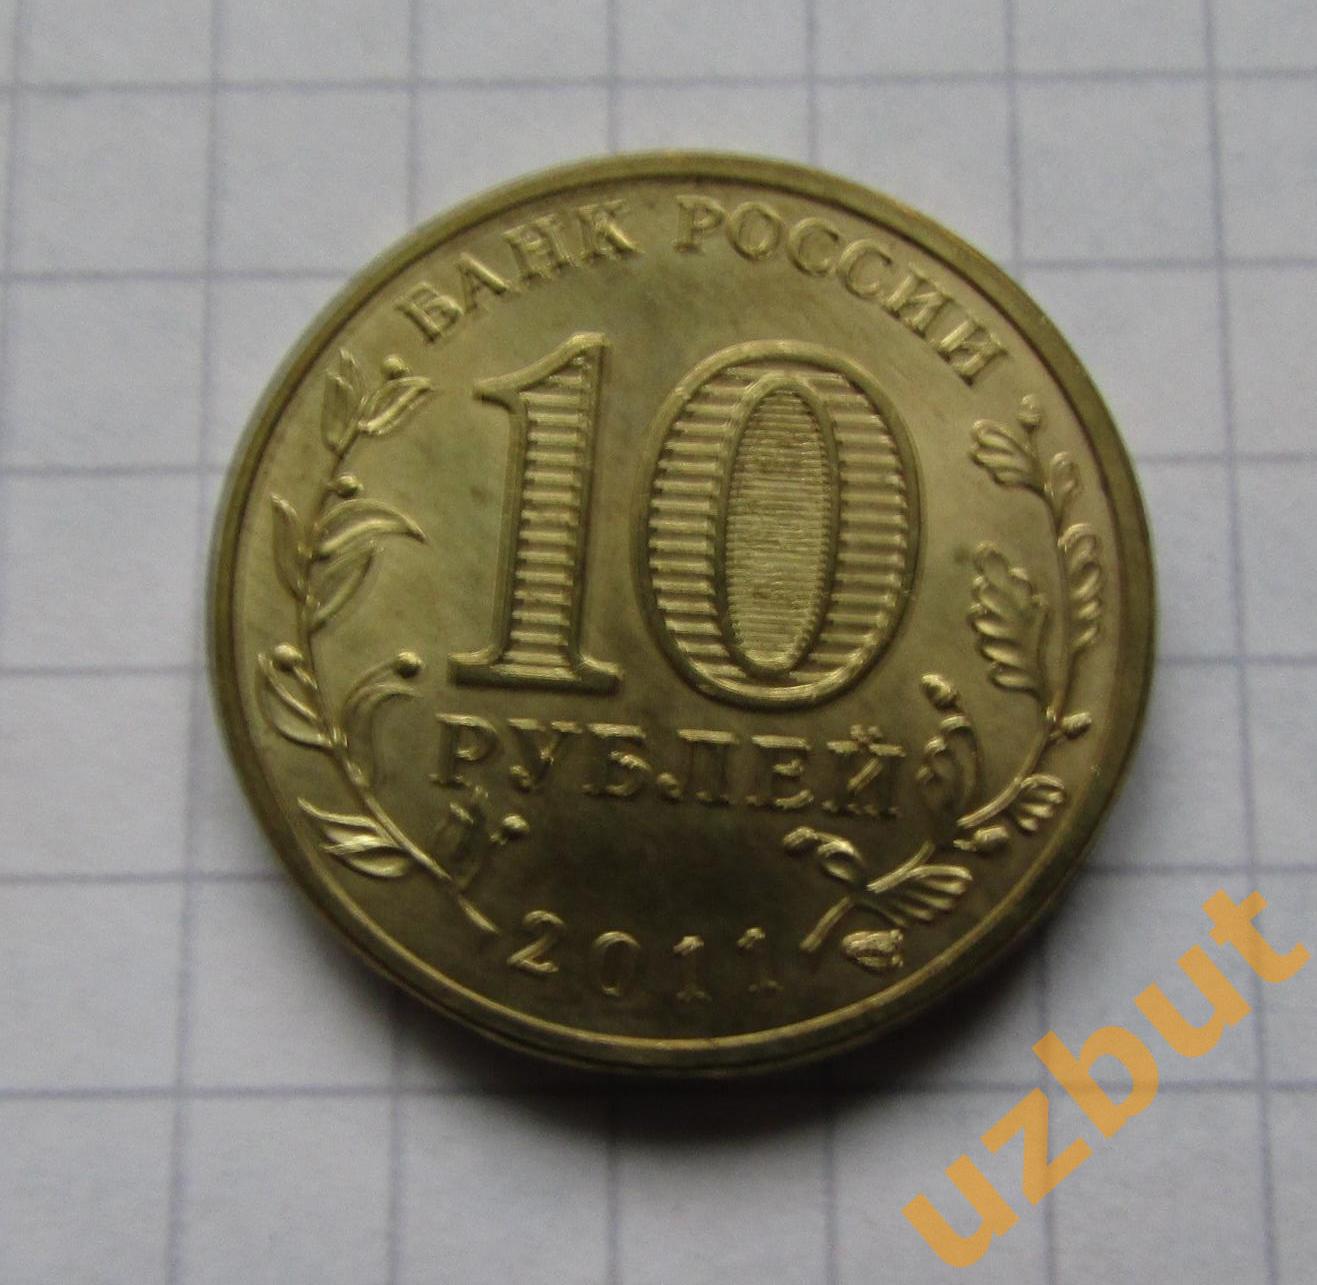 10 рублей РФ 2011 ГВС Ржев 1